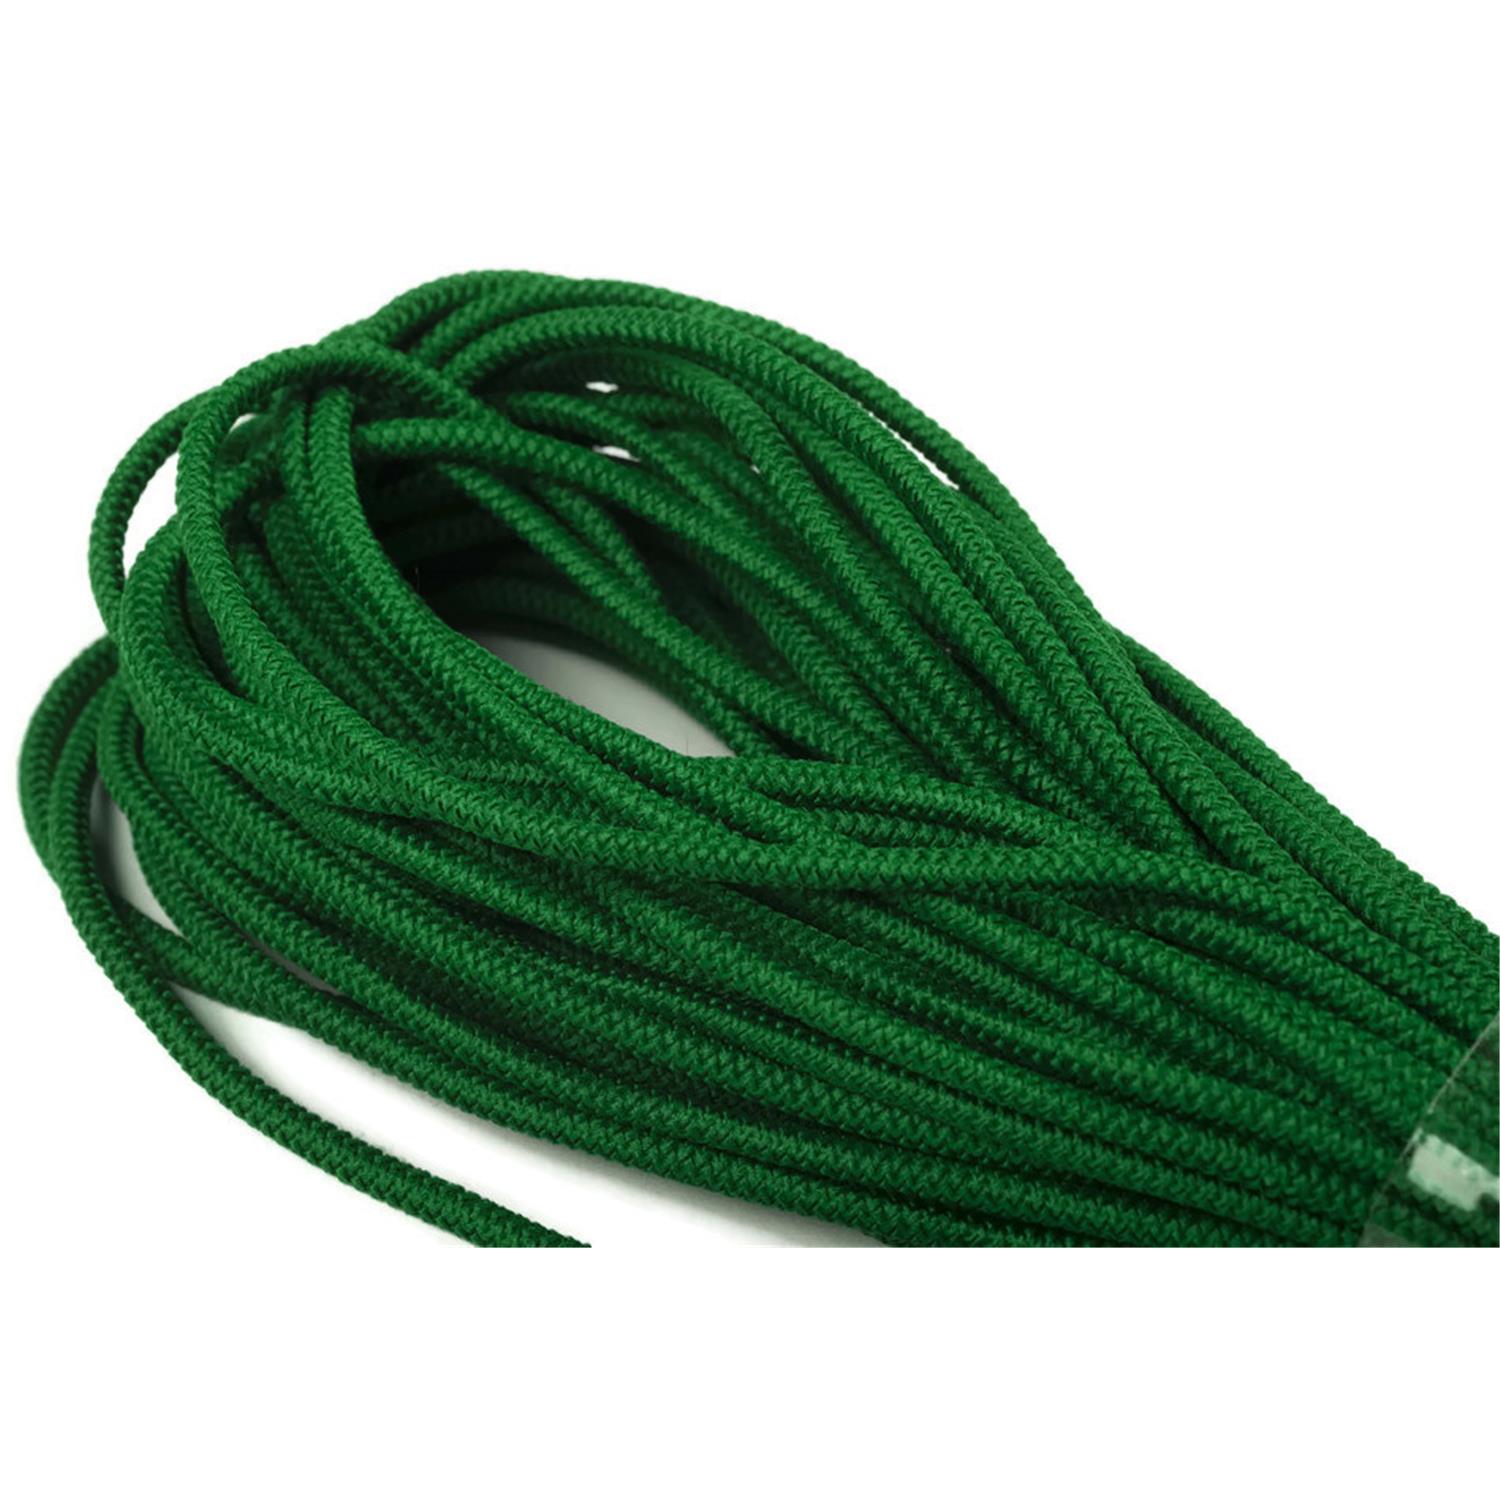 Gummikordel, 2,2mm, Kordel elastisch, grasgrün #30 10 meter